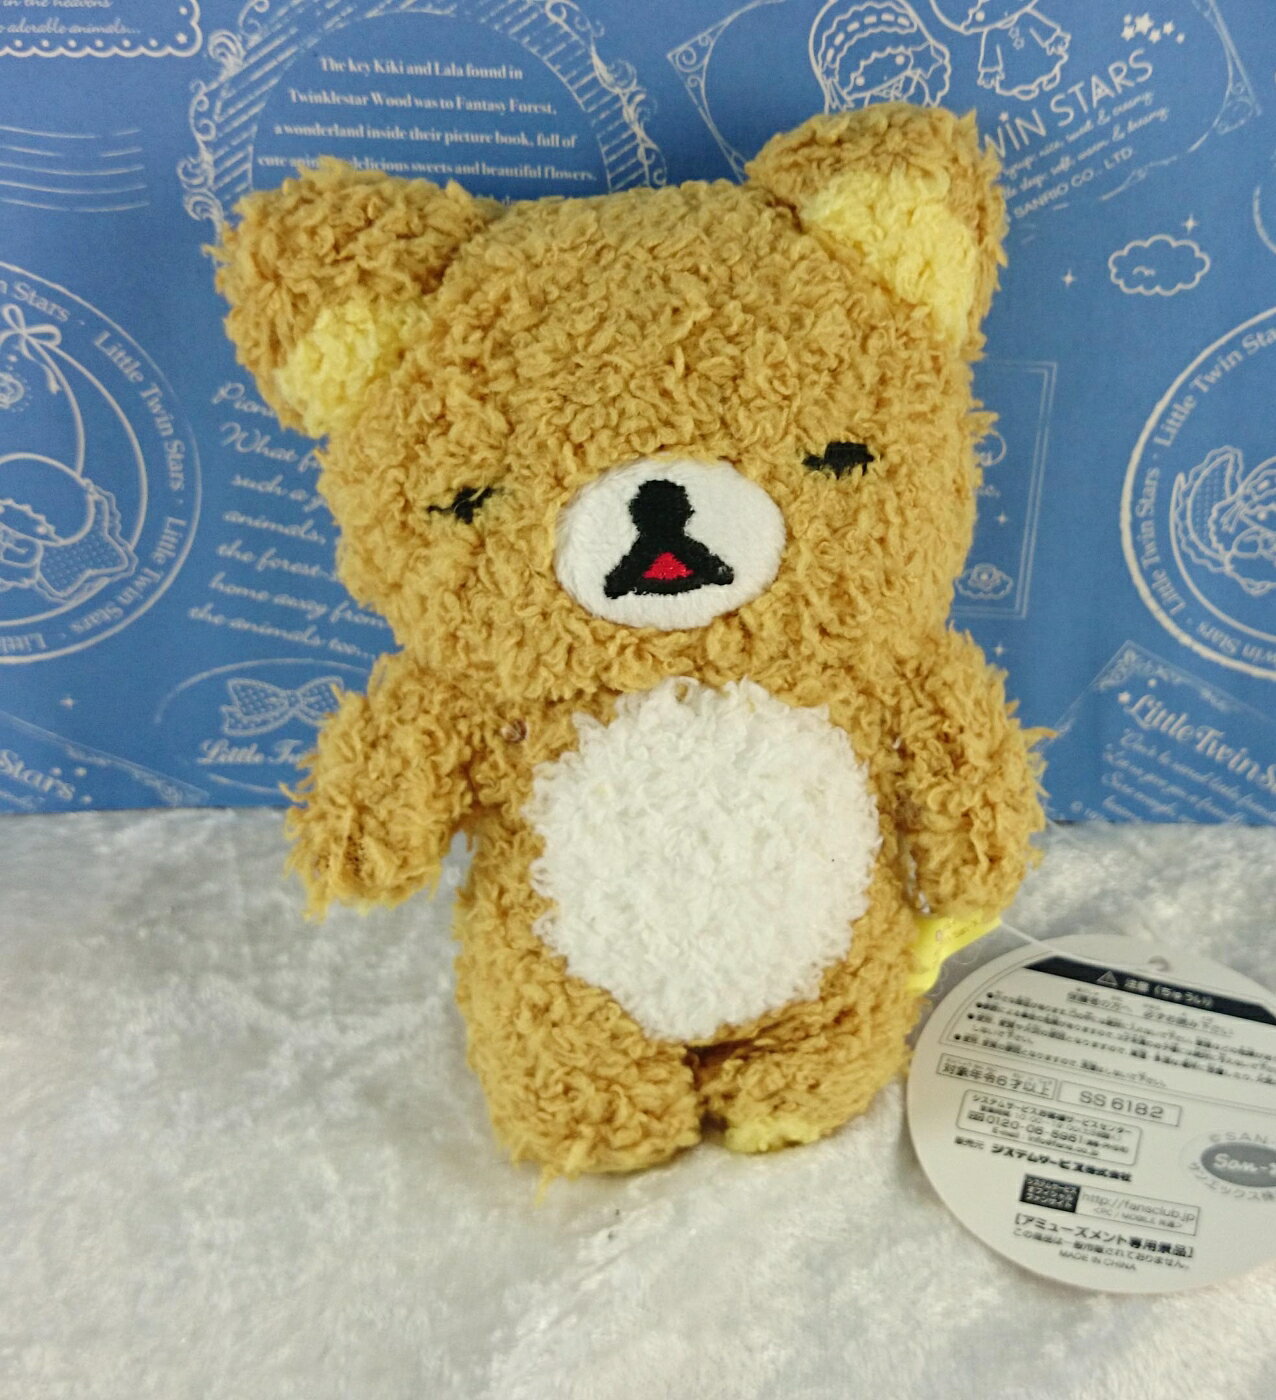 【震撼精品百貨】Rilakkuma San-X 拉拉熊懶懶熊 玩偶 瞇眼 震撼日式精品百貨